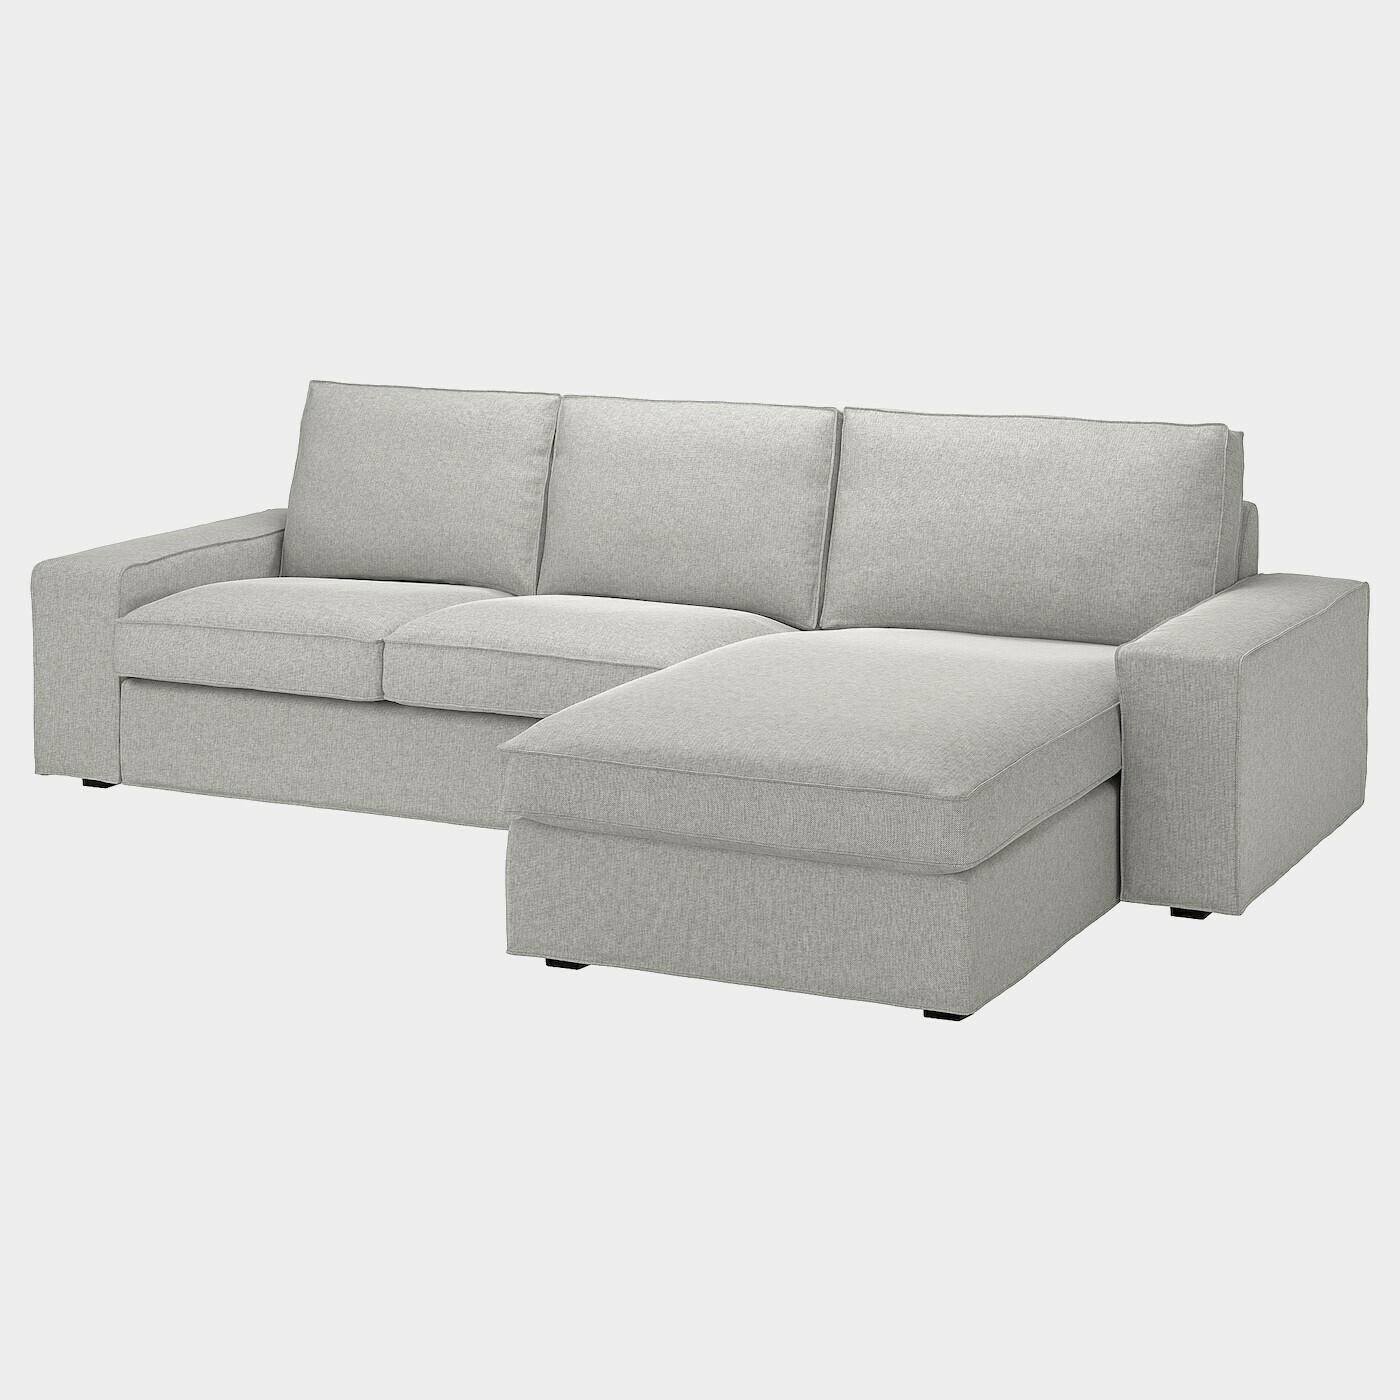 KIVIK 3er-Sofa mit Récamiere  -  - Möbel Ideen für dein Zuhause von Home Trends. Möbel Trends von Social Media Influencer für dein Skandi Zuhause.